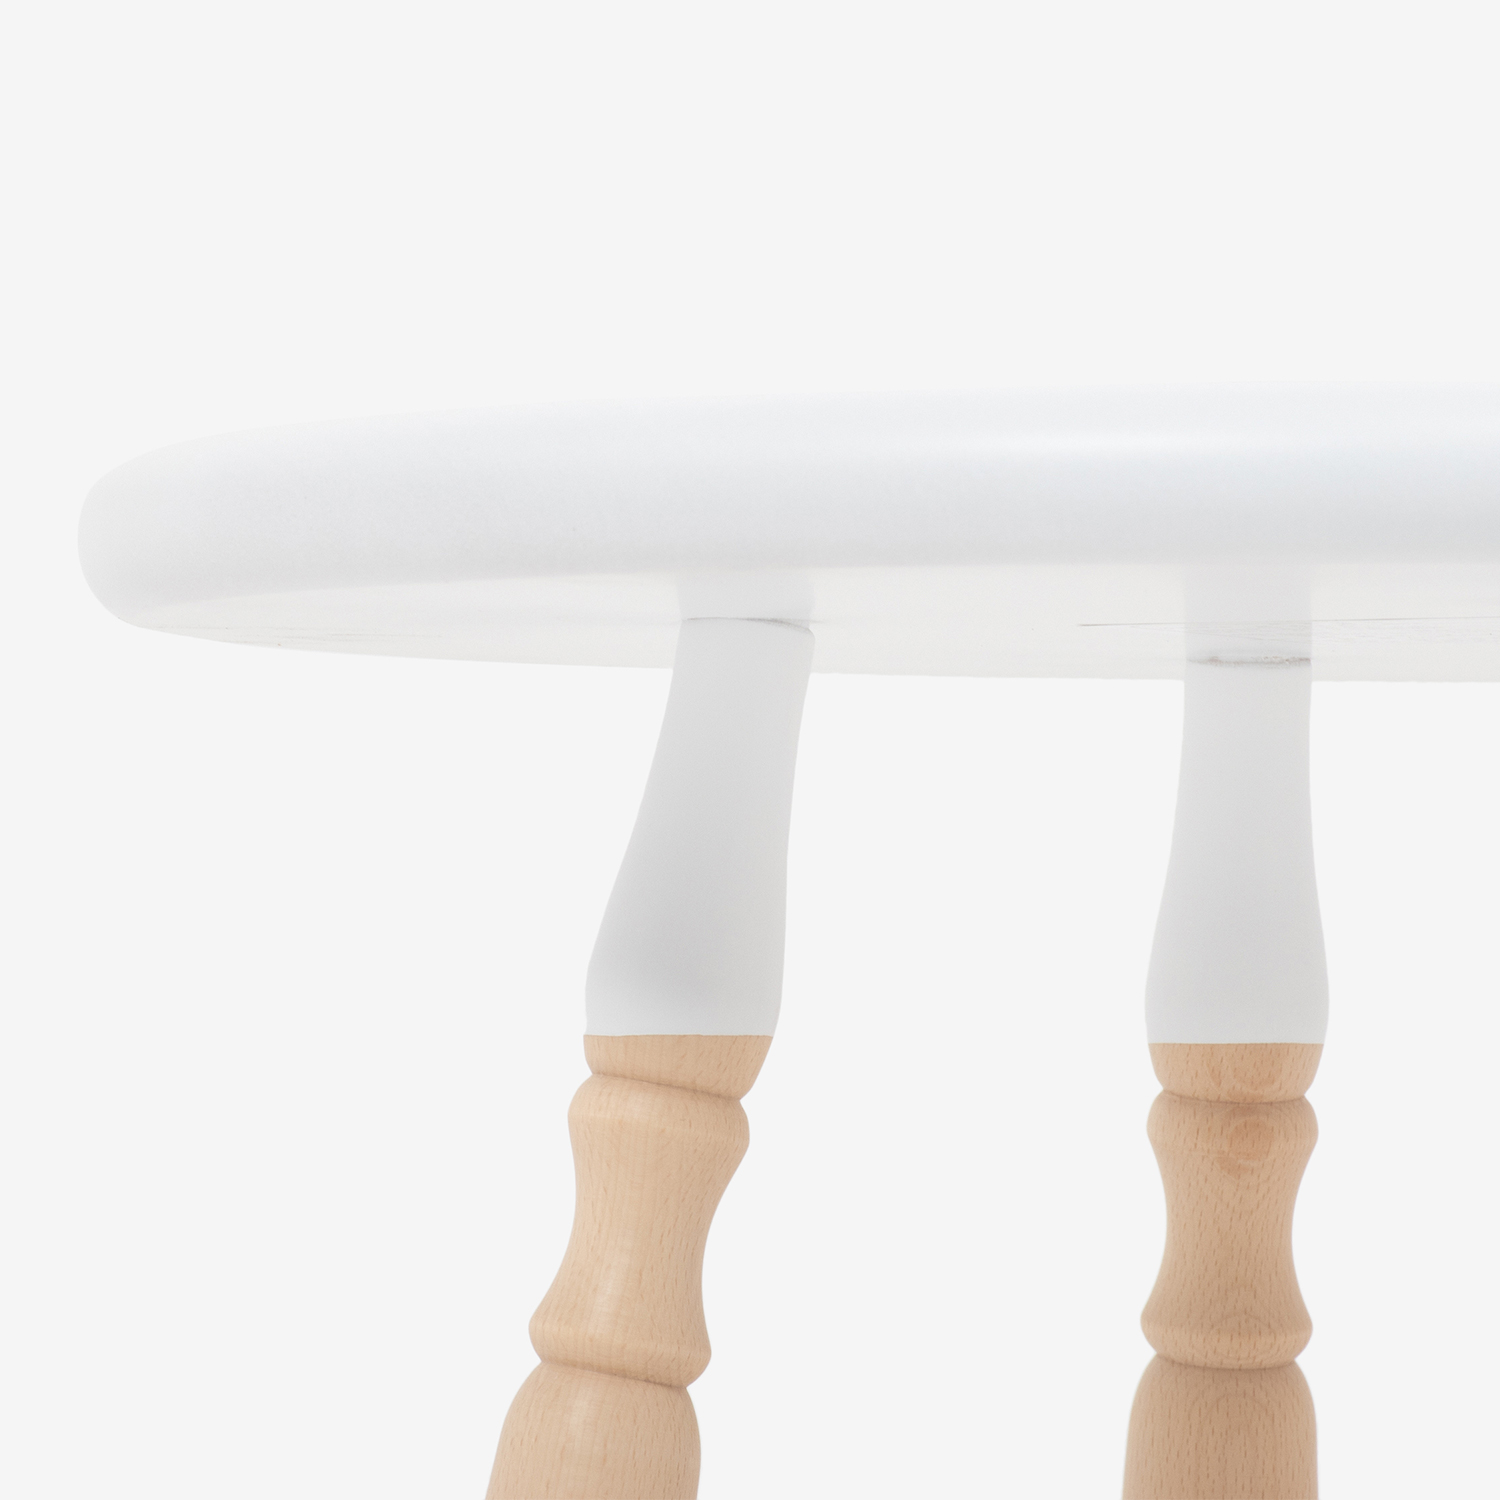 秋田木工 サイドテーブル「500EB」ブナ材ホワイト色【決算セールのため20%OFF】